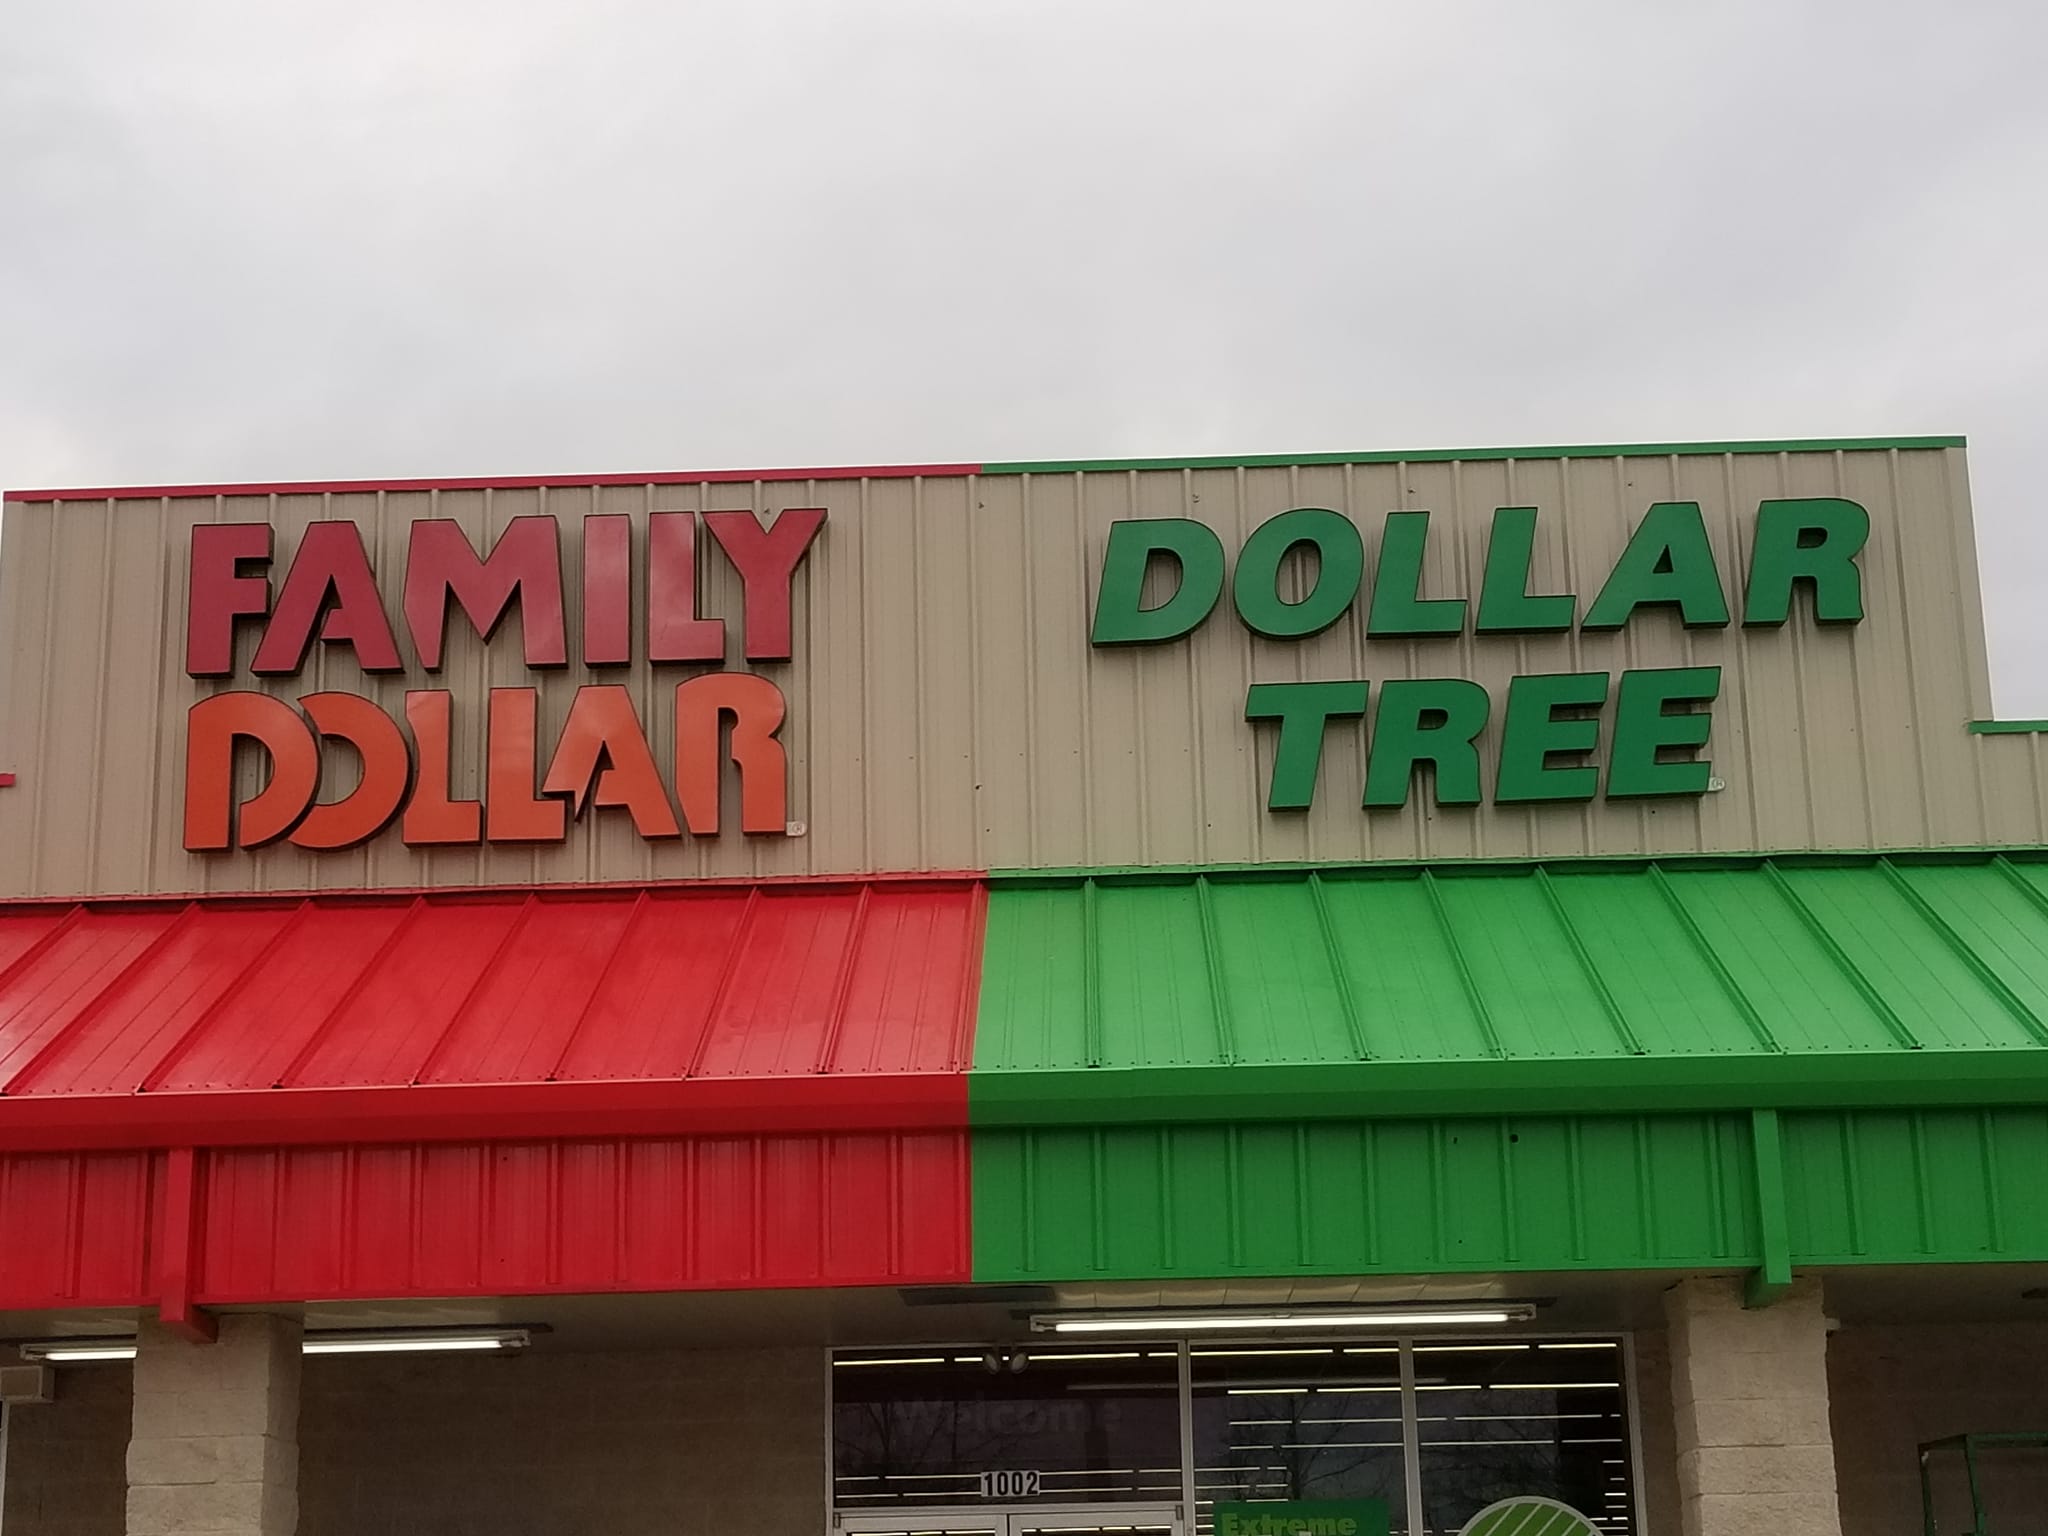 Family Dollar Tree